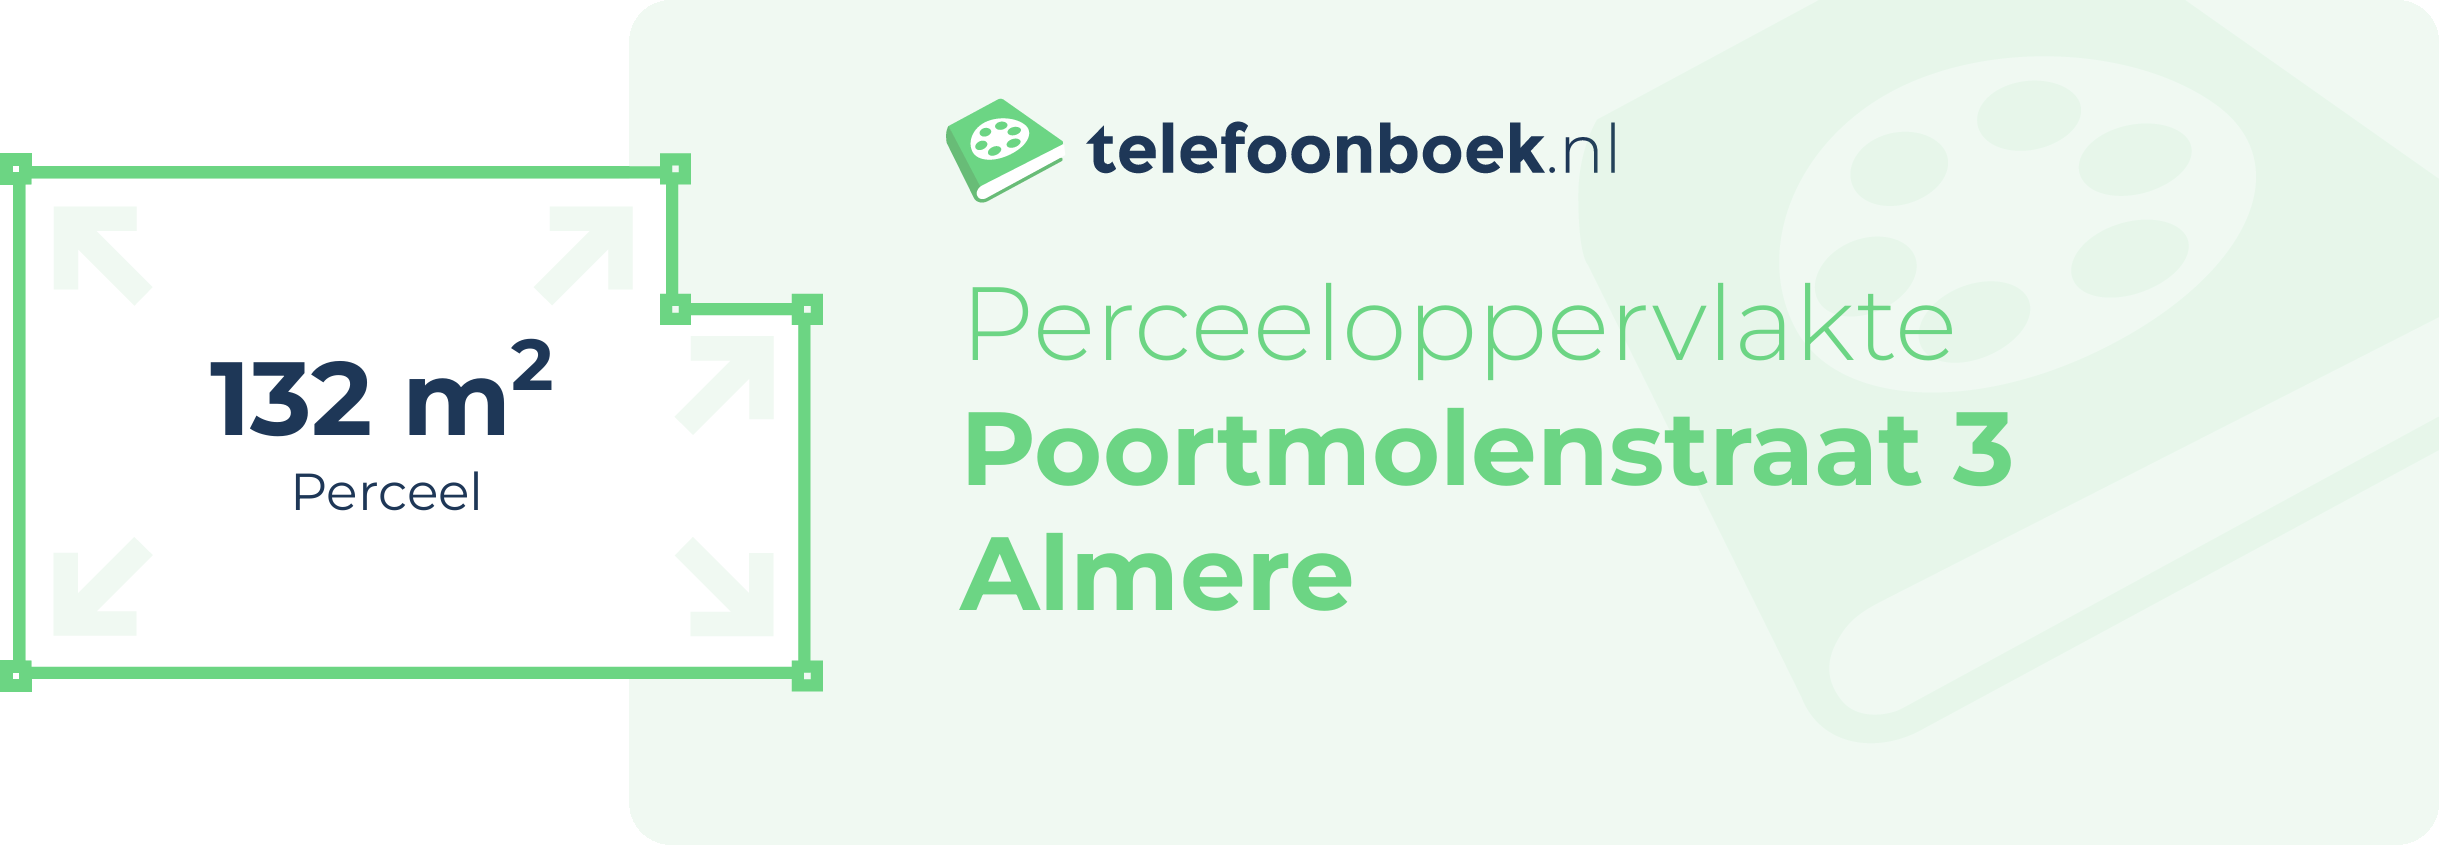 Perceeloppervlakte Poortmolenstraat 3 Almere